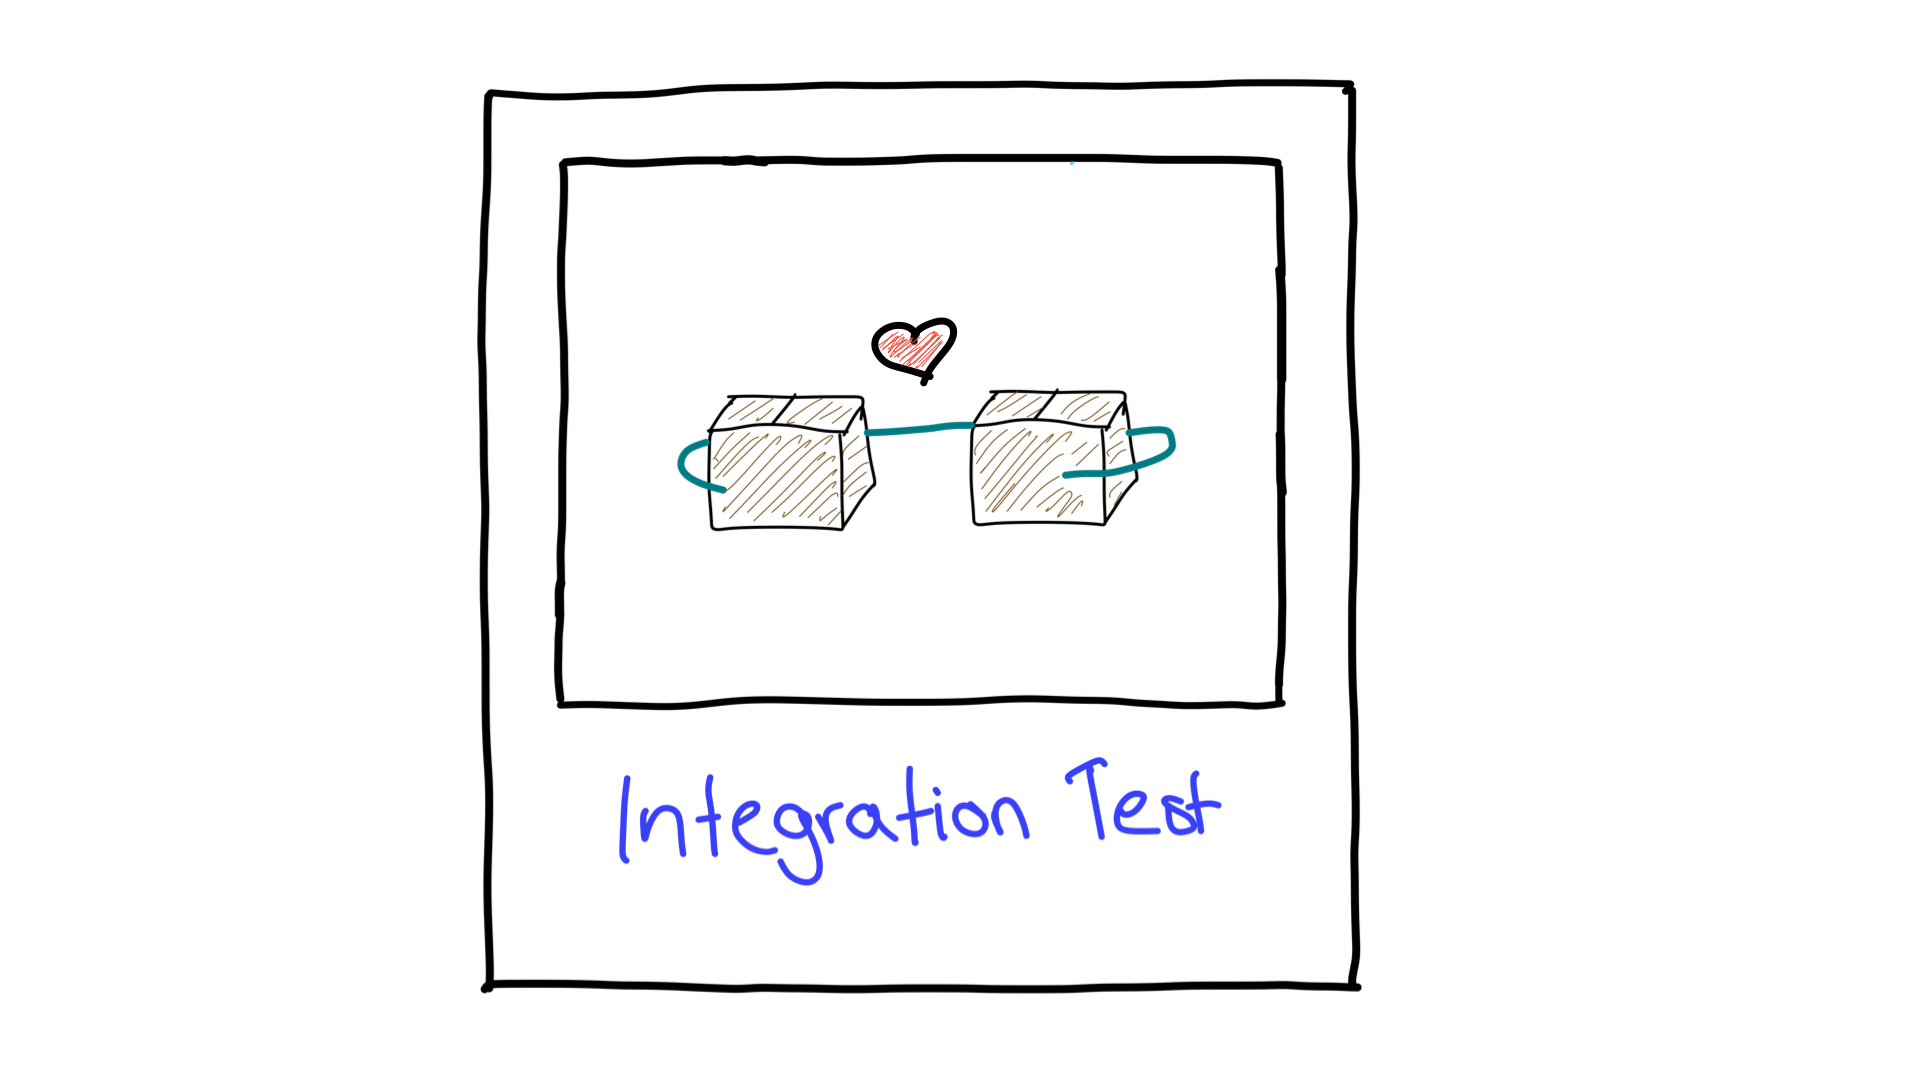 Uma representação simplificada do teste de integração mostrando como duas unidades funcionam juntas.